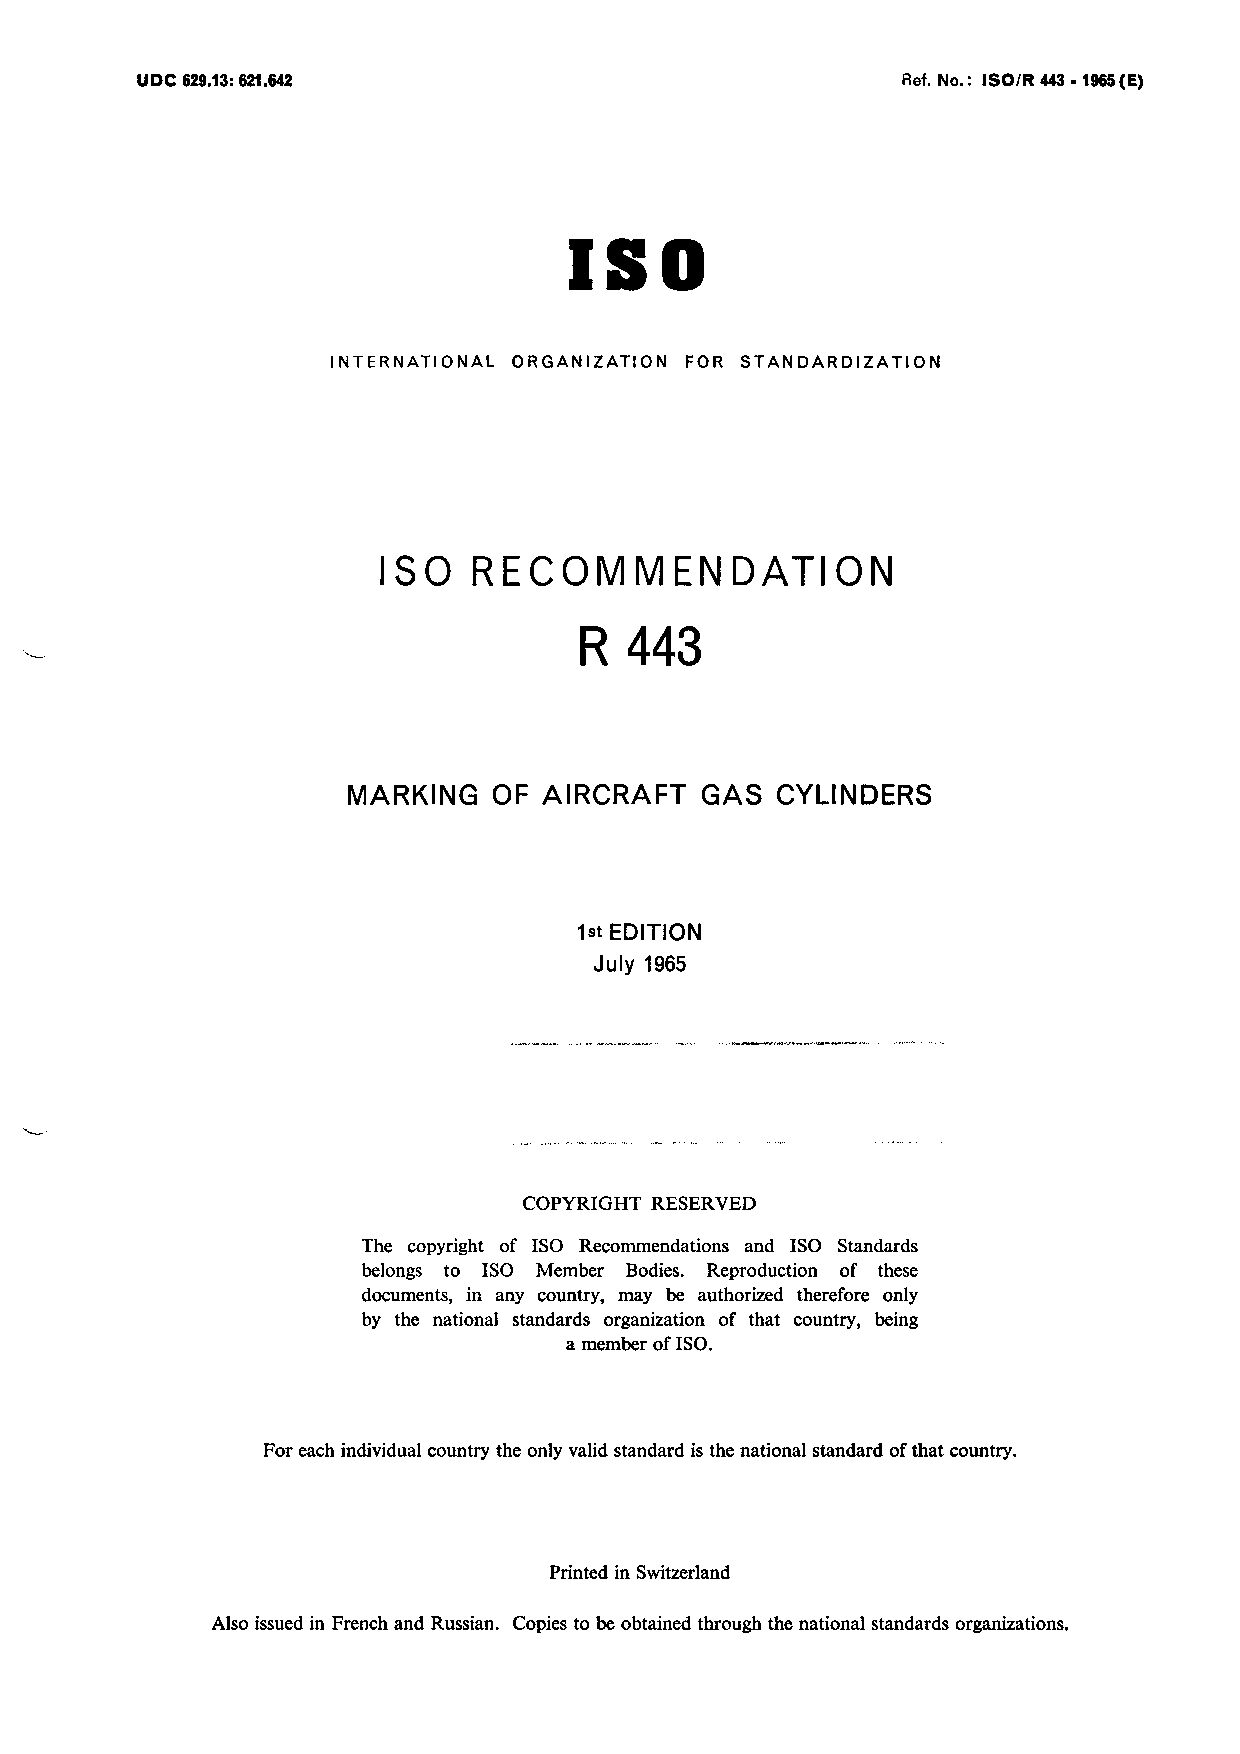 ISO/R 443-1965